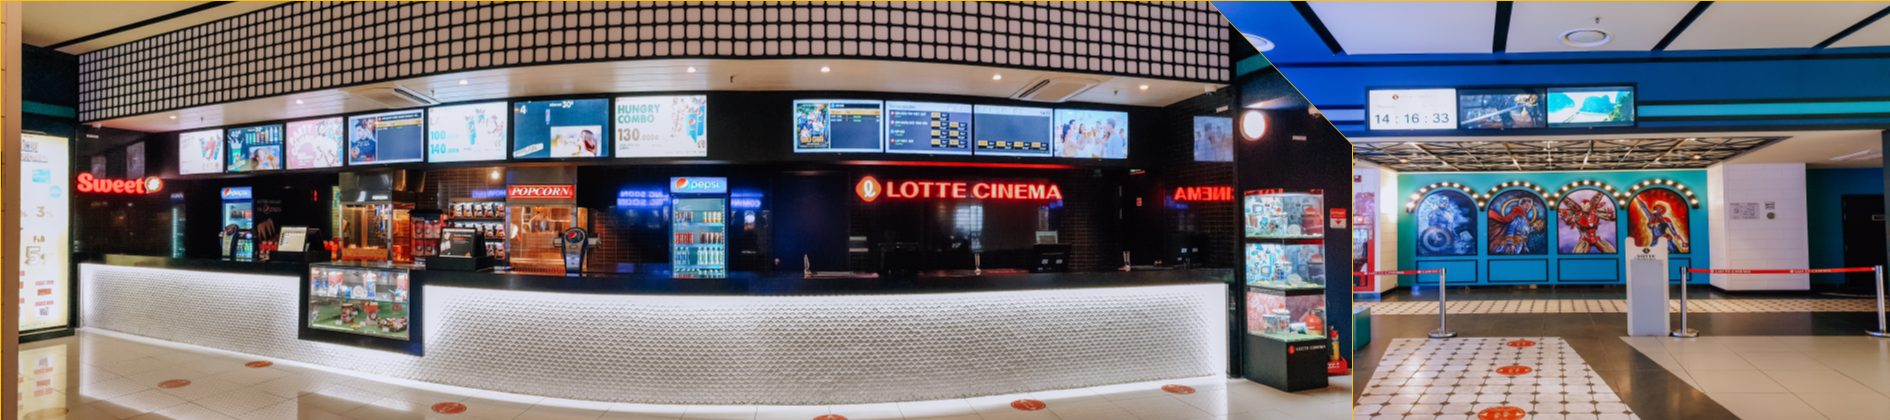 Lotte Cinema Nha Trang Trần Phú ảnh 1